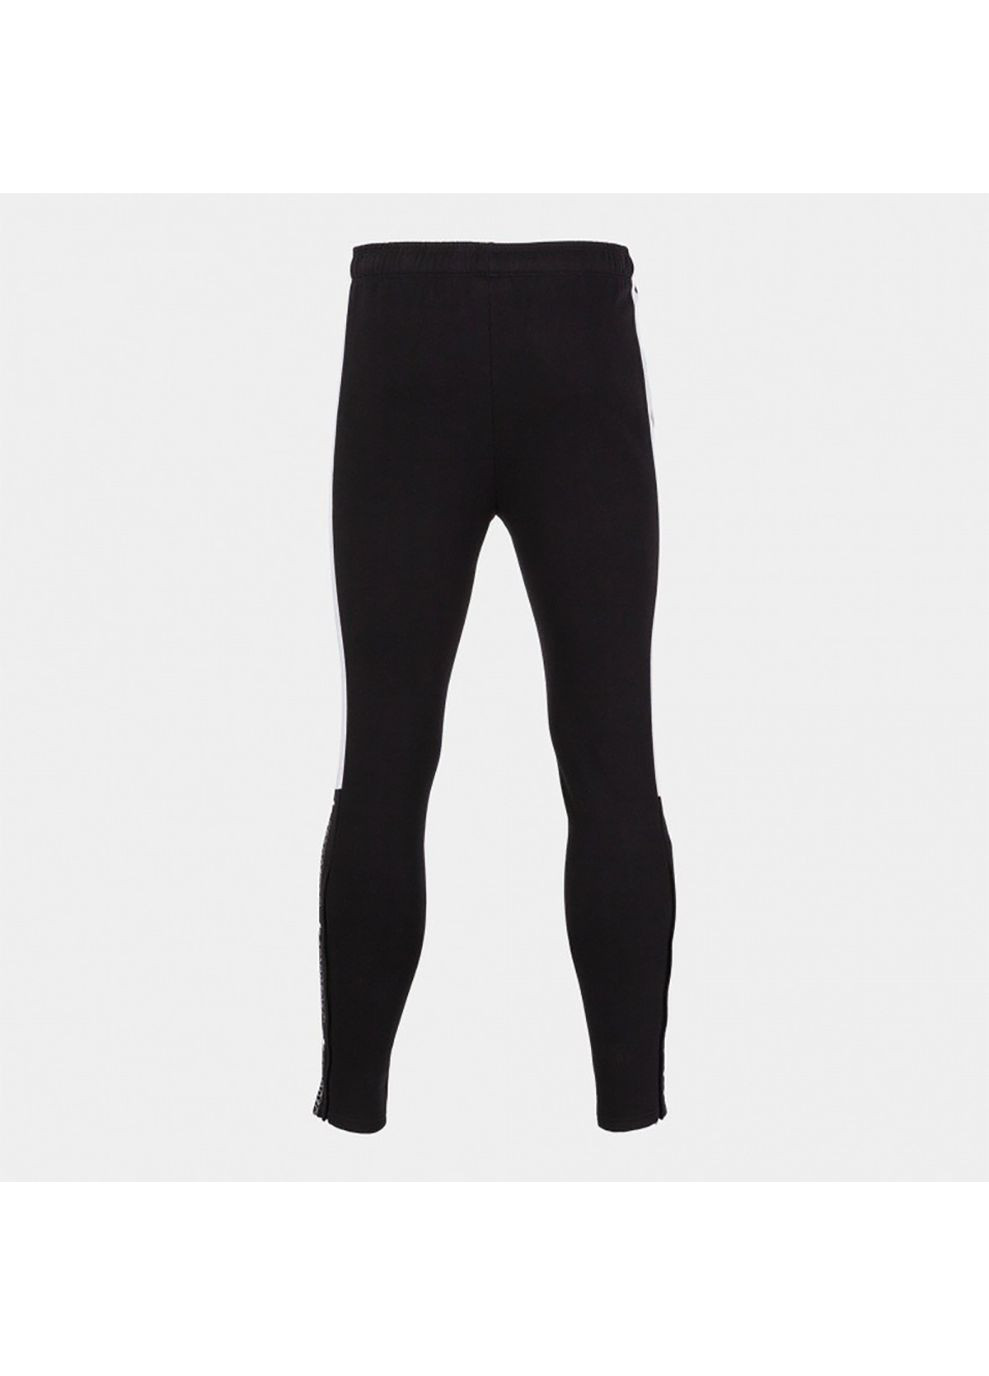 Черные спортивные демисезонные брюки Joma